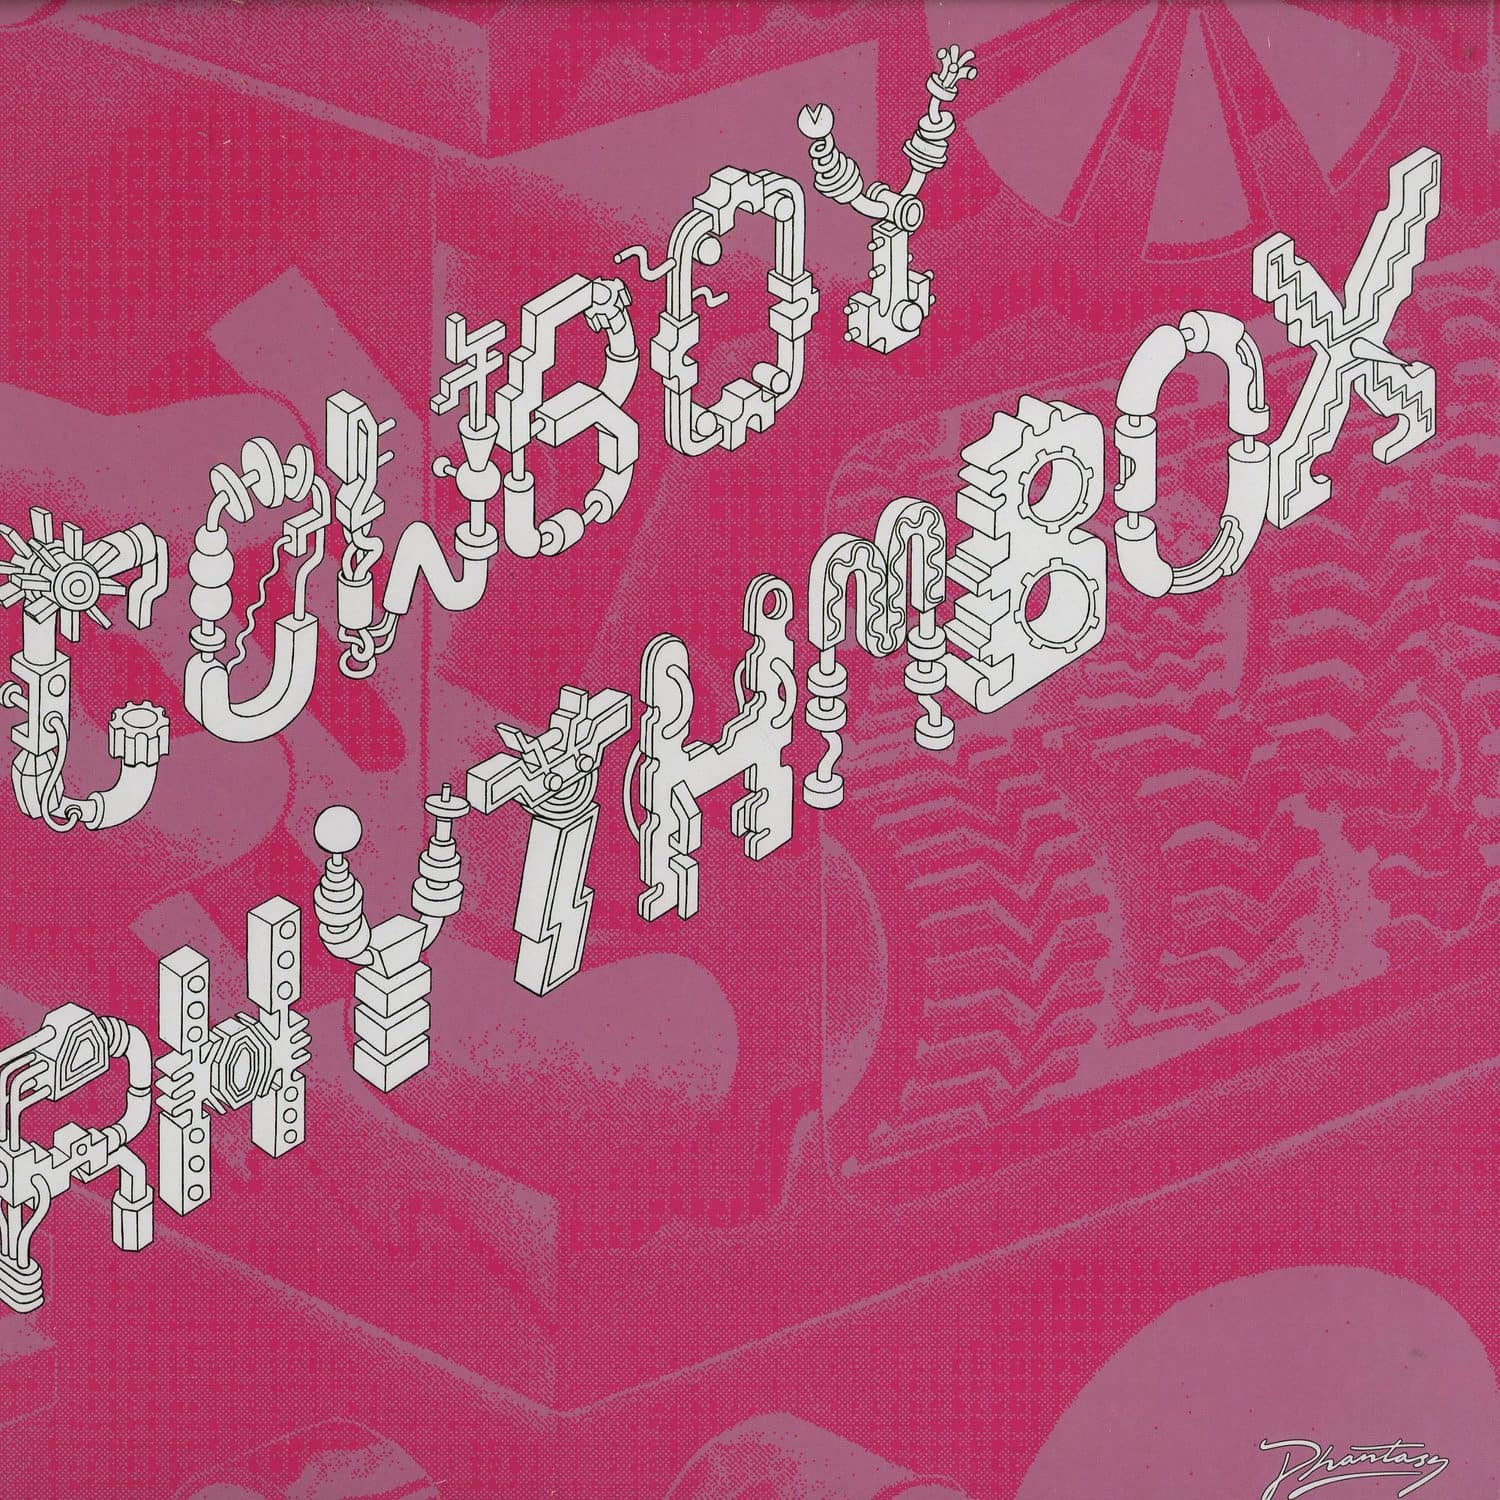 Cowboy Rhythmbox - FANTASMA